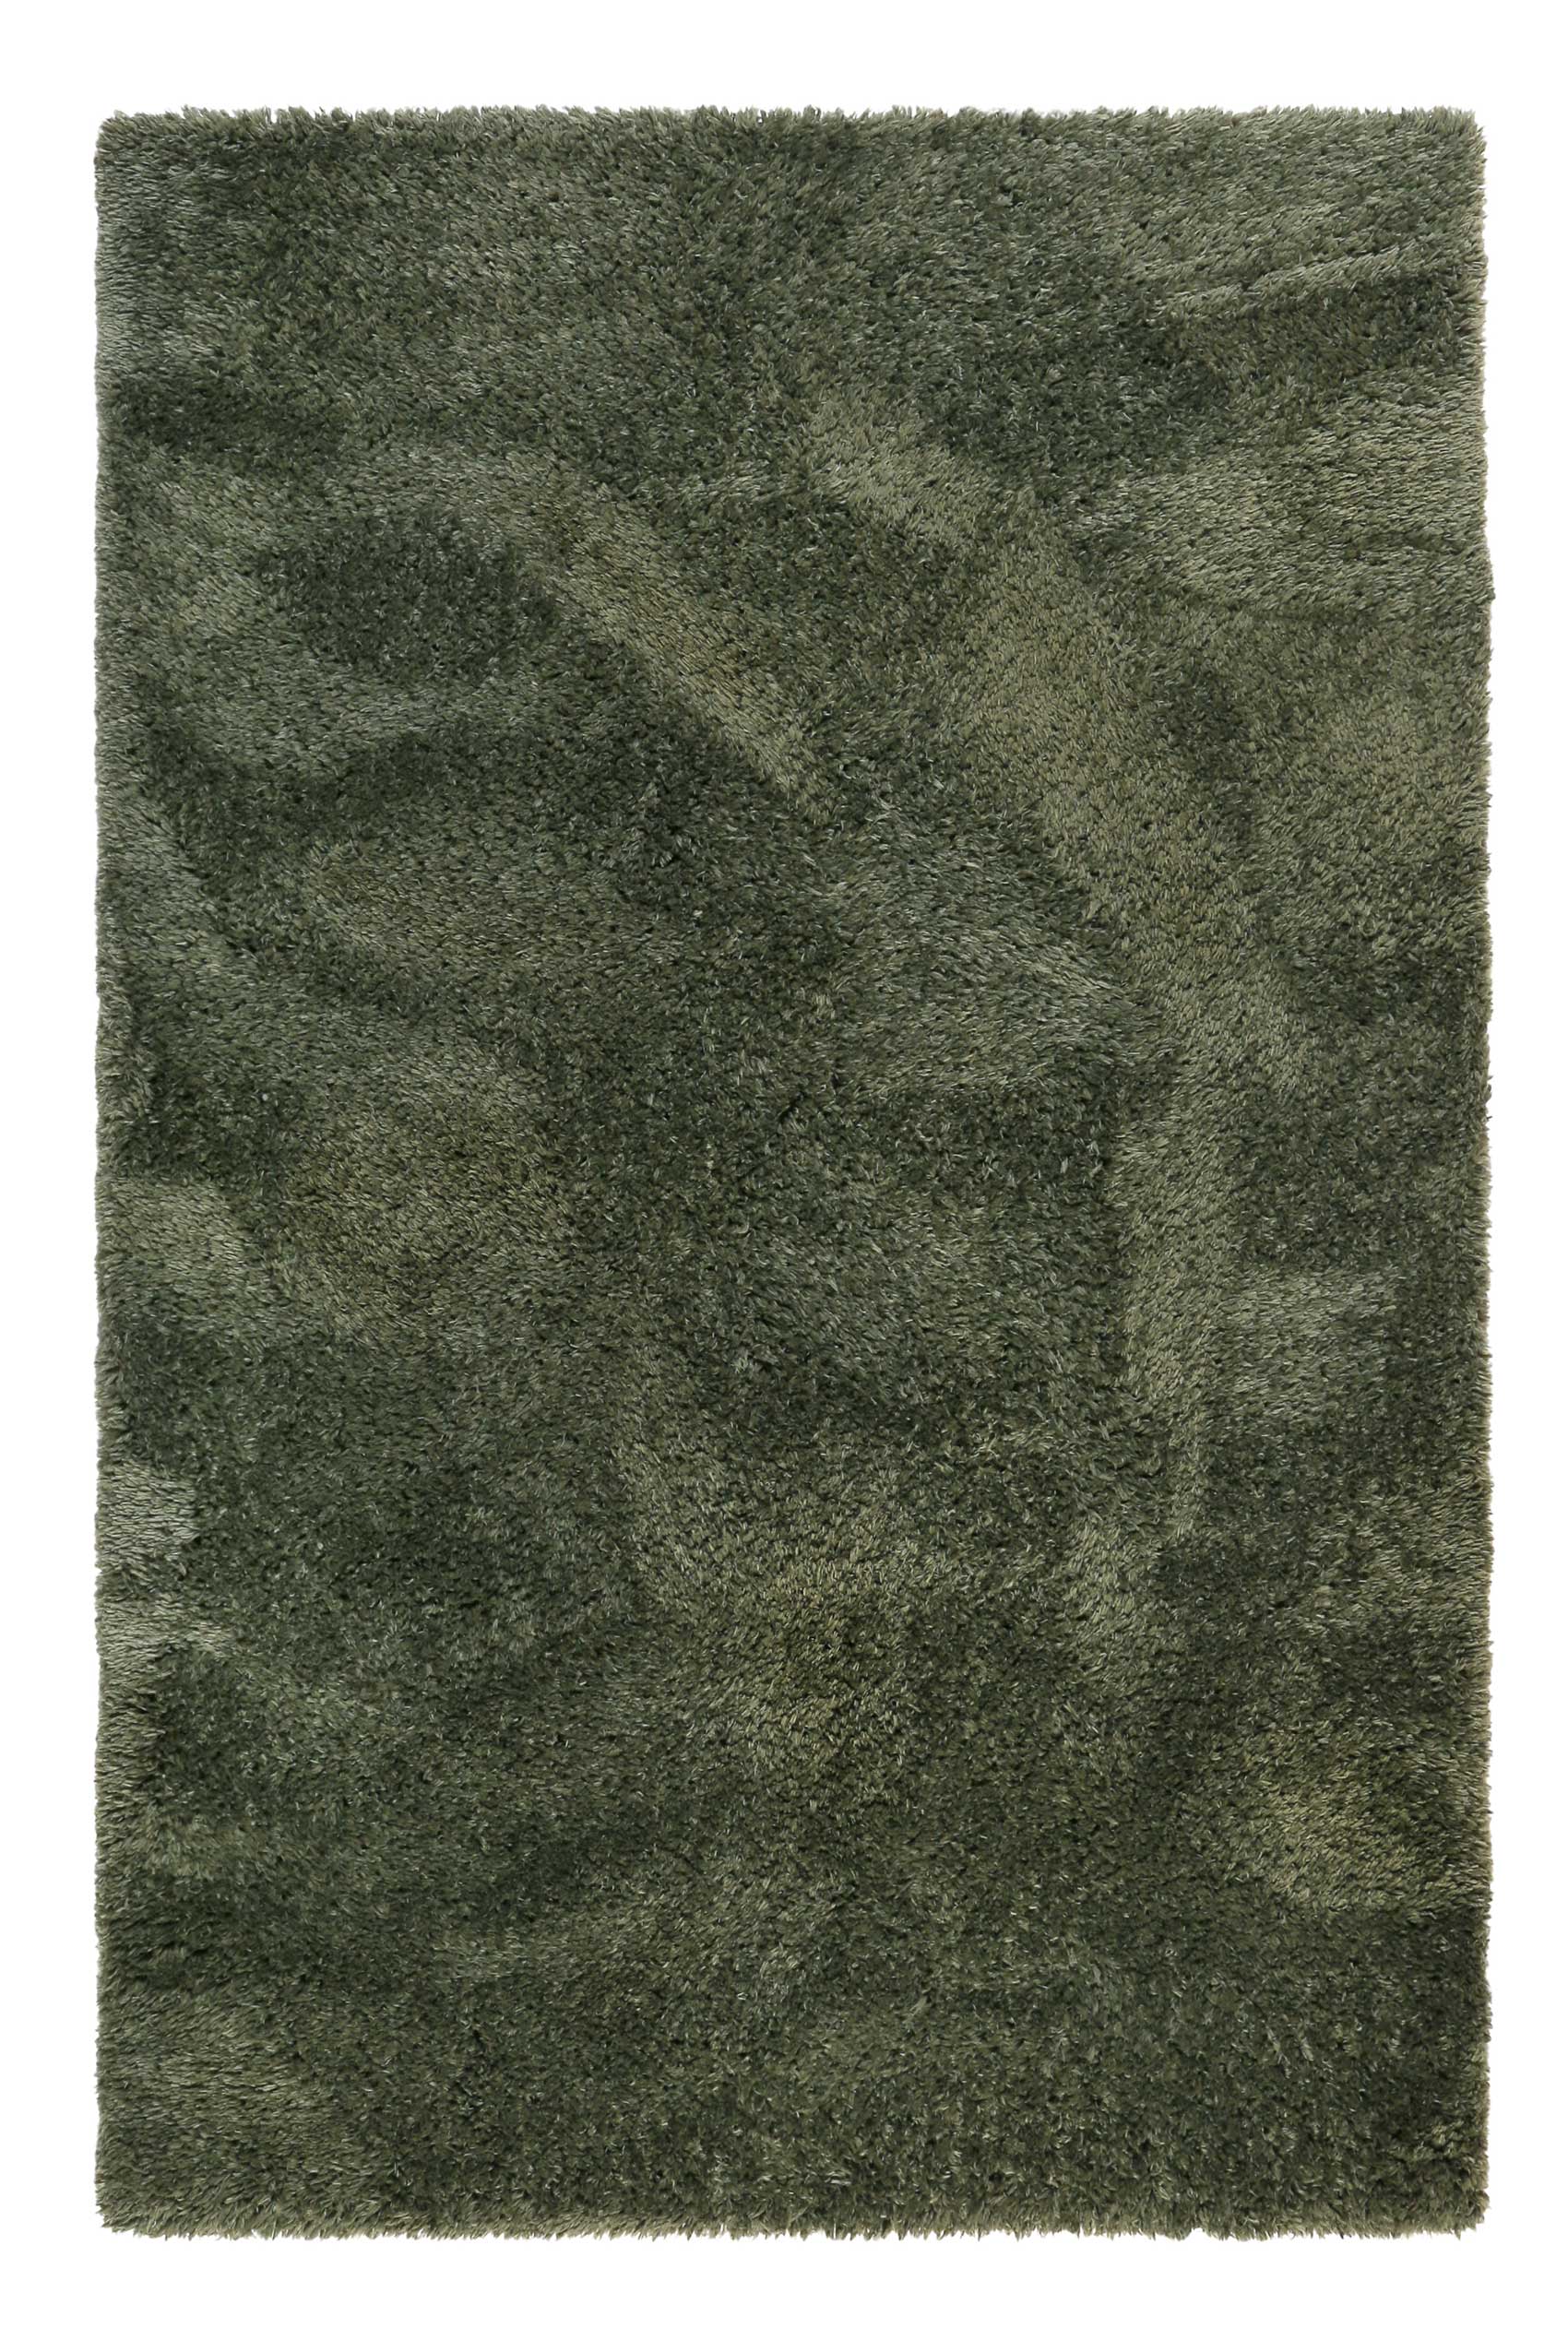 Esprit Teppich Grün weich & soft & nachhaltig » Yogi « - Ansicht 1